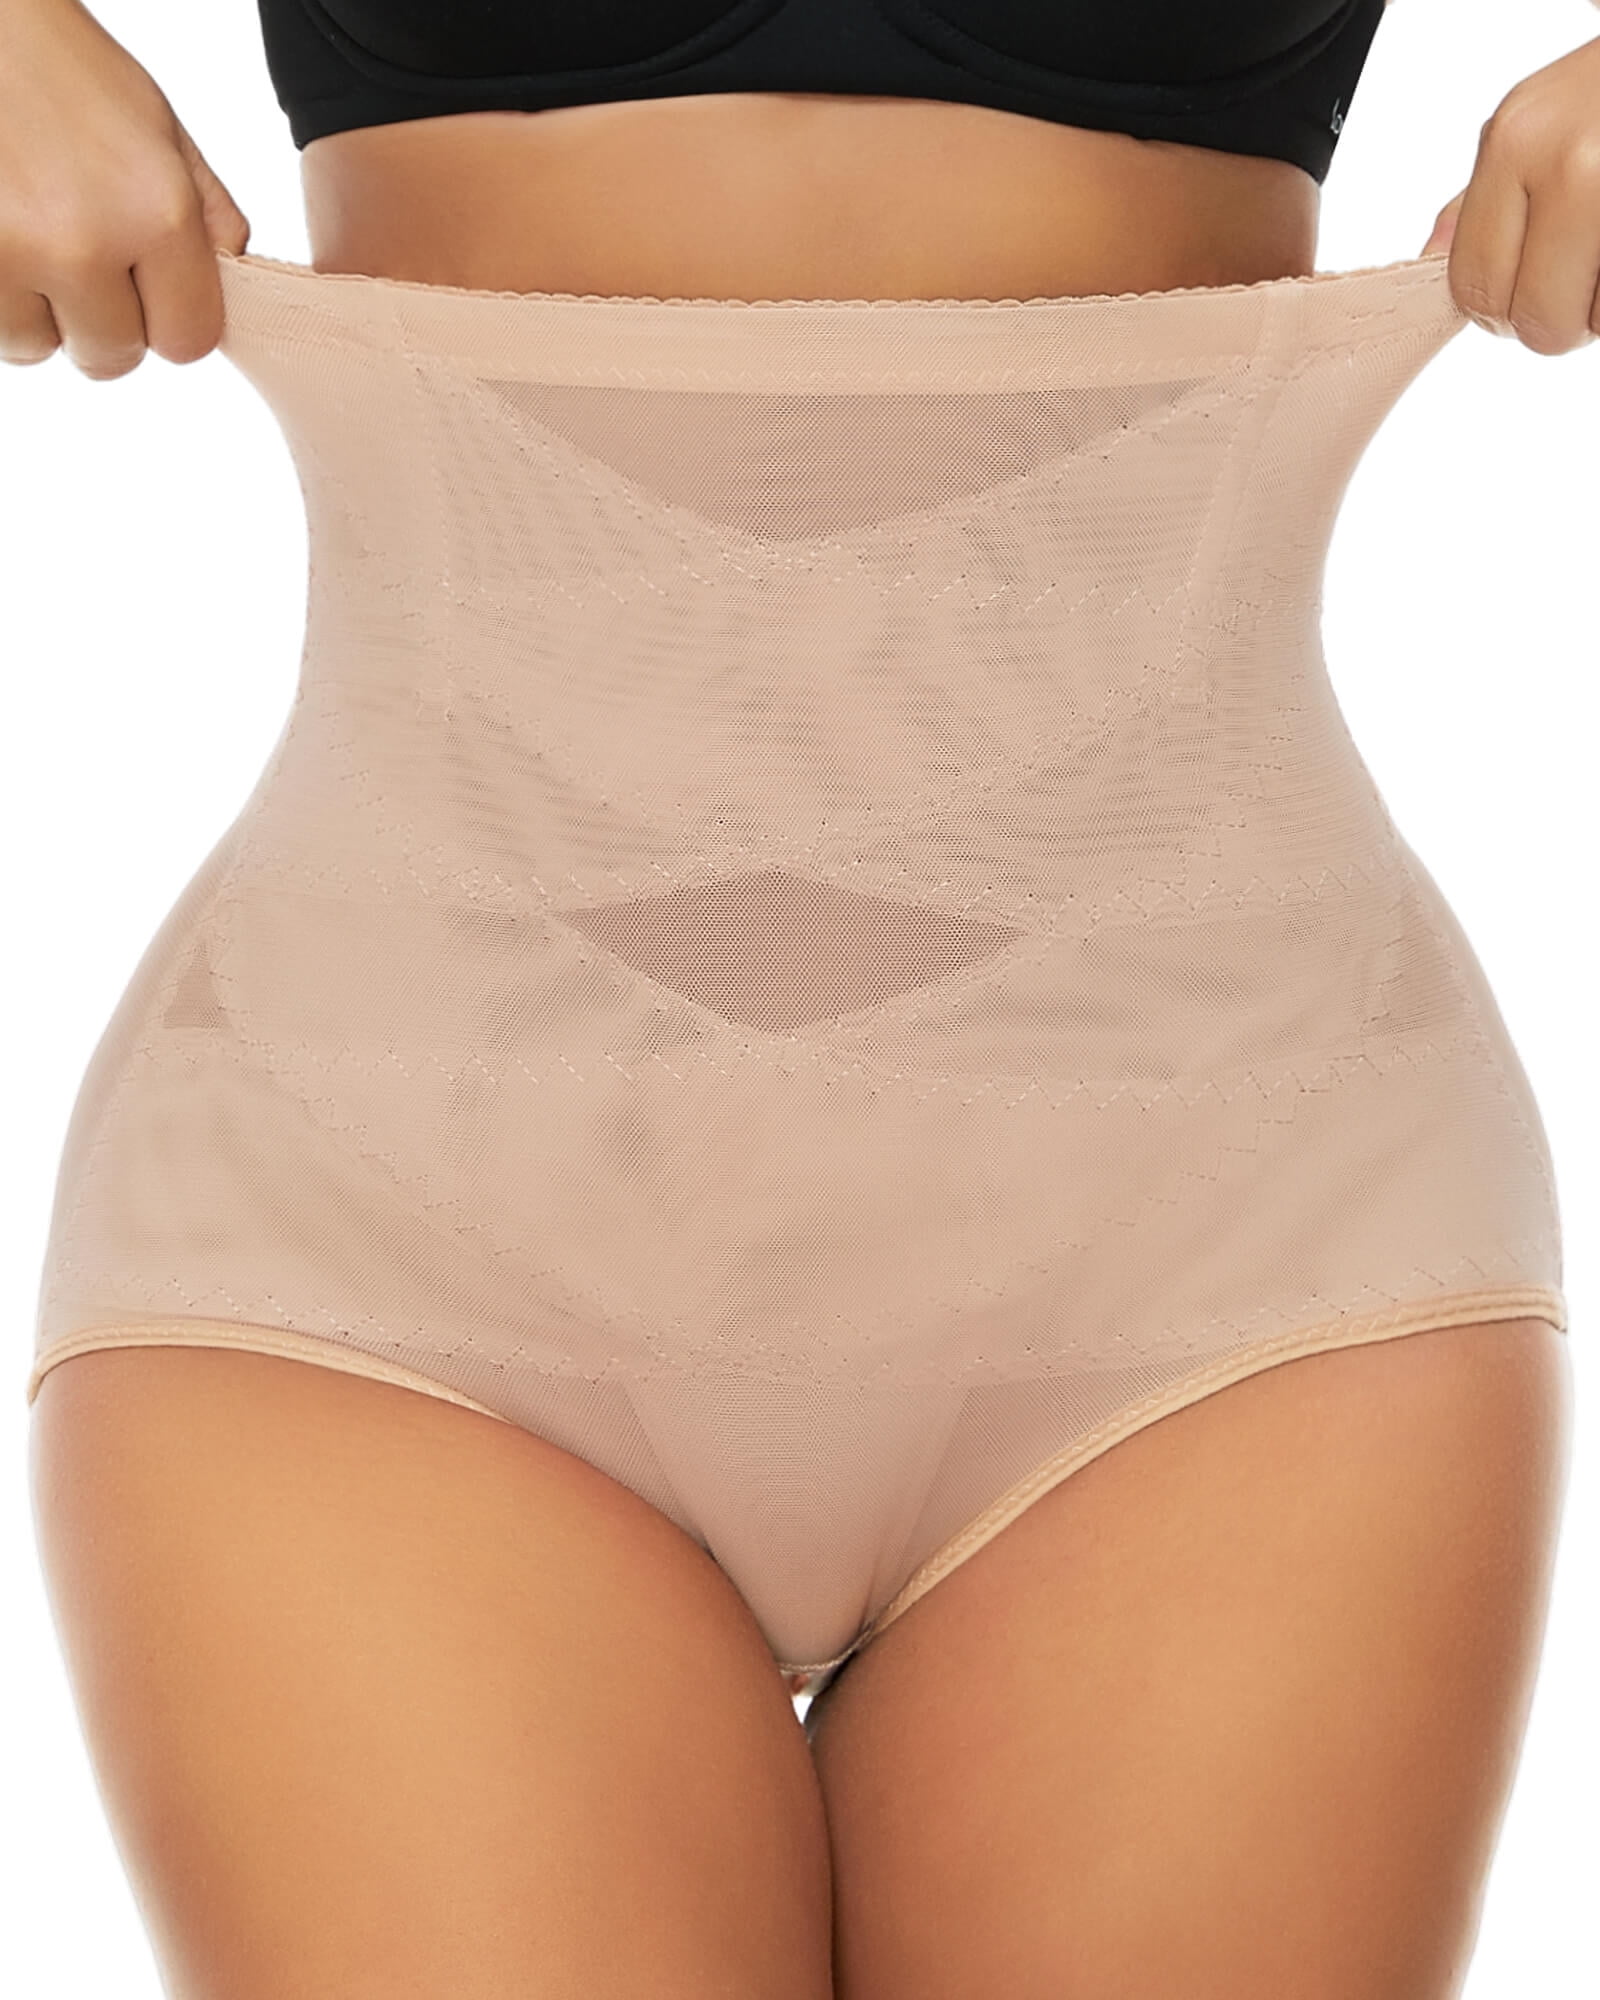 Vaslanda Tummy Control Thigh Slimmer Firm Shapewear Butt Lifter Shorts  Seamless Girdle in Dubai - UAE